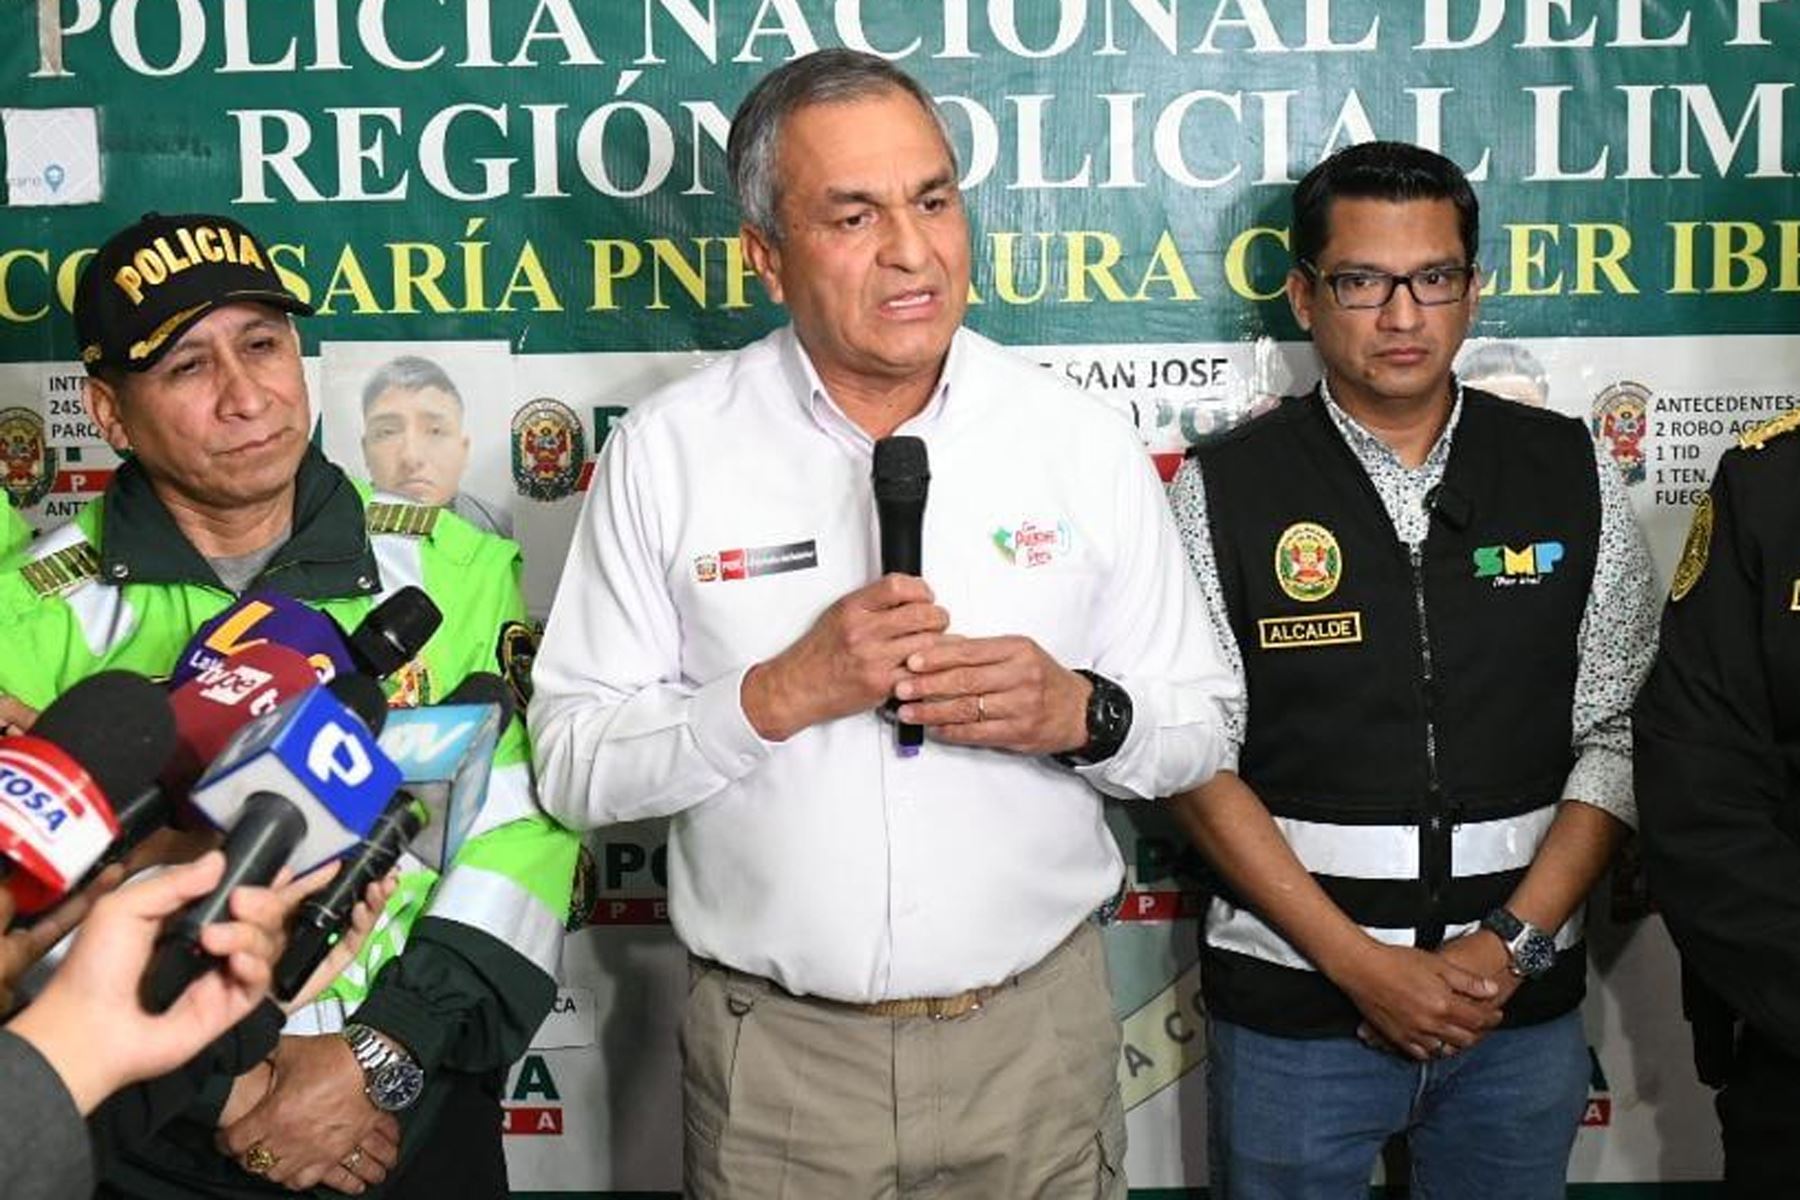 El ministro del Interior, Vicente Romero inspecciona el trabajo policial en la comisaría Laura Caller, en el límite entre San Martín de Porres y Los Olivos, como parte de las acciones ejecutadas por la Policía Nacional del Perú, para combatir la criminalidad, en el marco del estado de emergencia.
Foto: Mininter